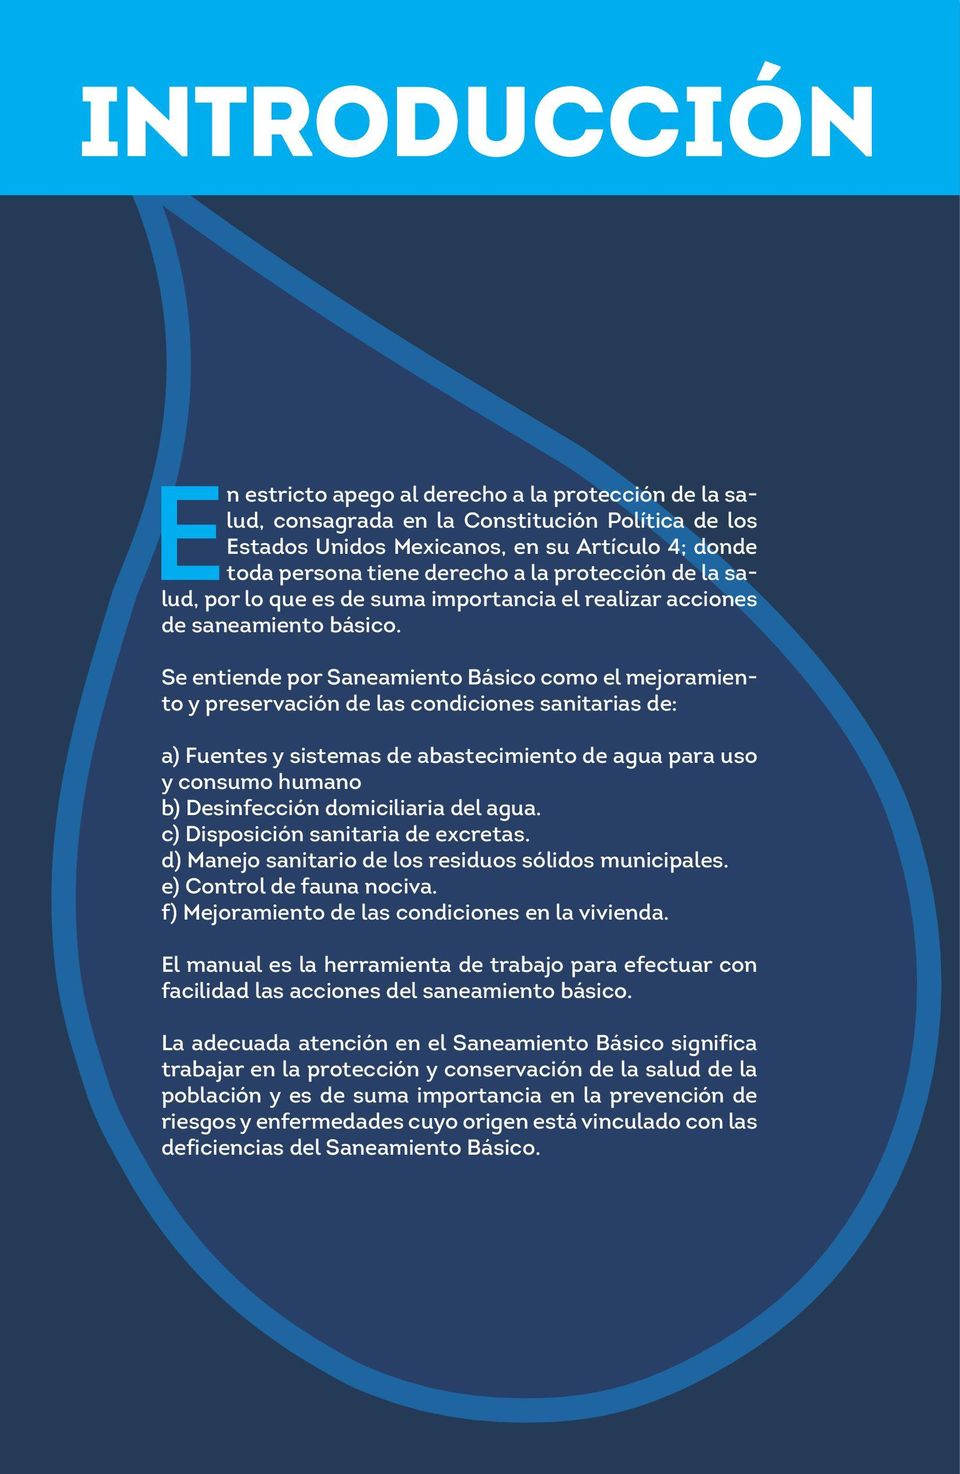 Se entiende por Saneamiento Básico como el mejoramiento y preservación de las condiciones sanitarias de: a) Fuentes y sistemas de abastecimiento de agua para uso y consumo humano b) Desinfección